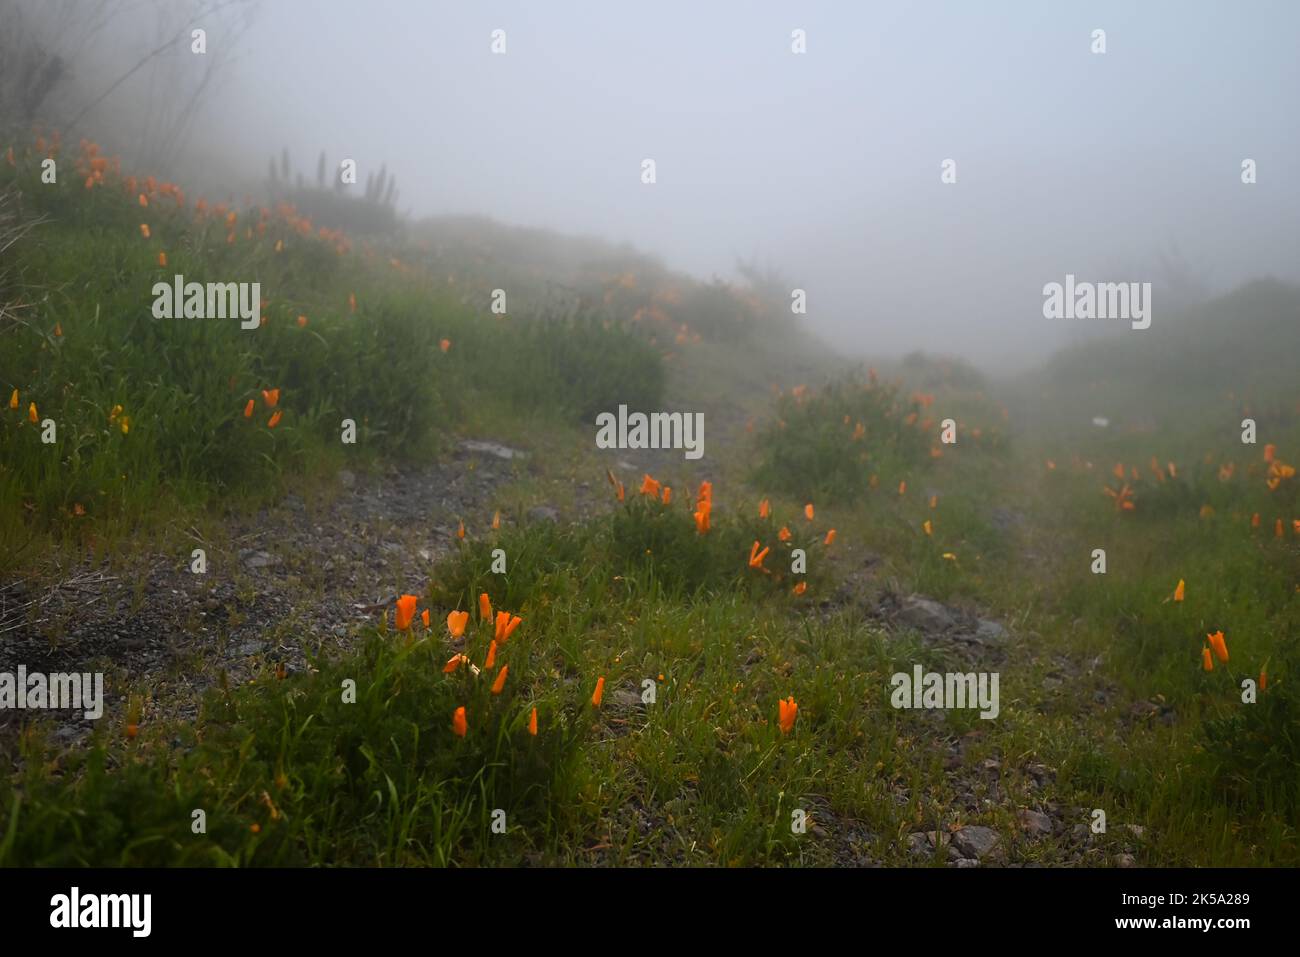 Fiori arancioni di papavero californiano lungo un sentiero roccioso in nebbia Foto Stock